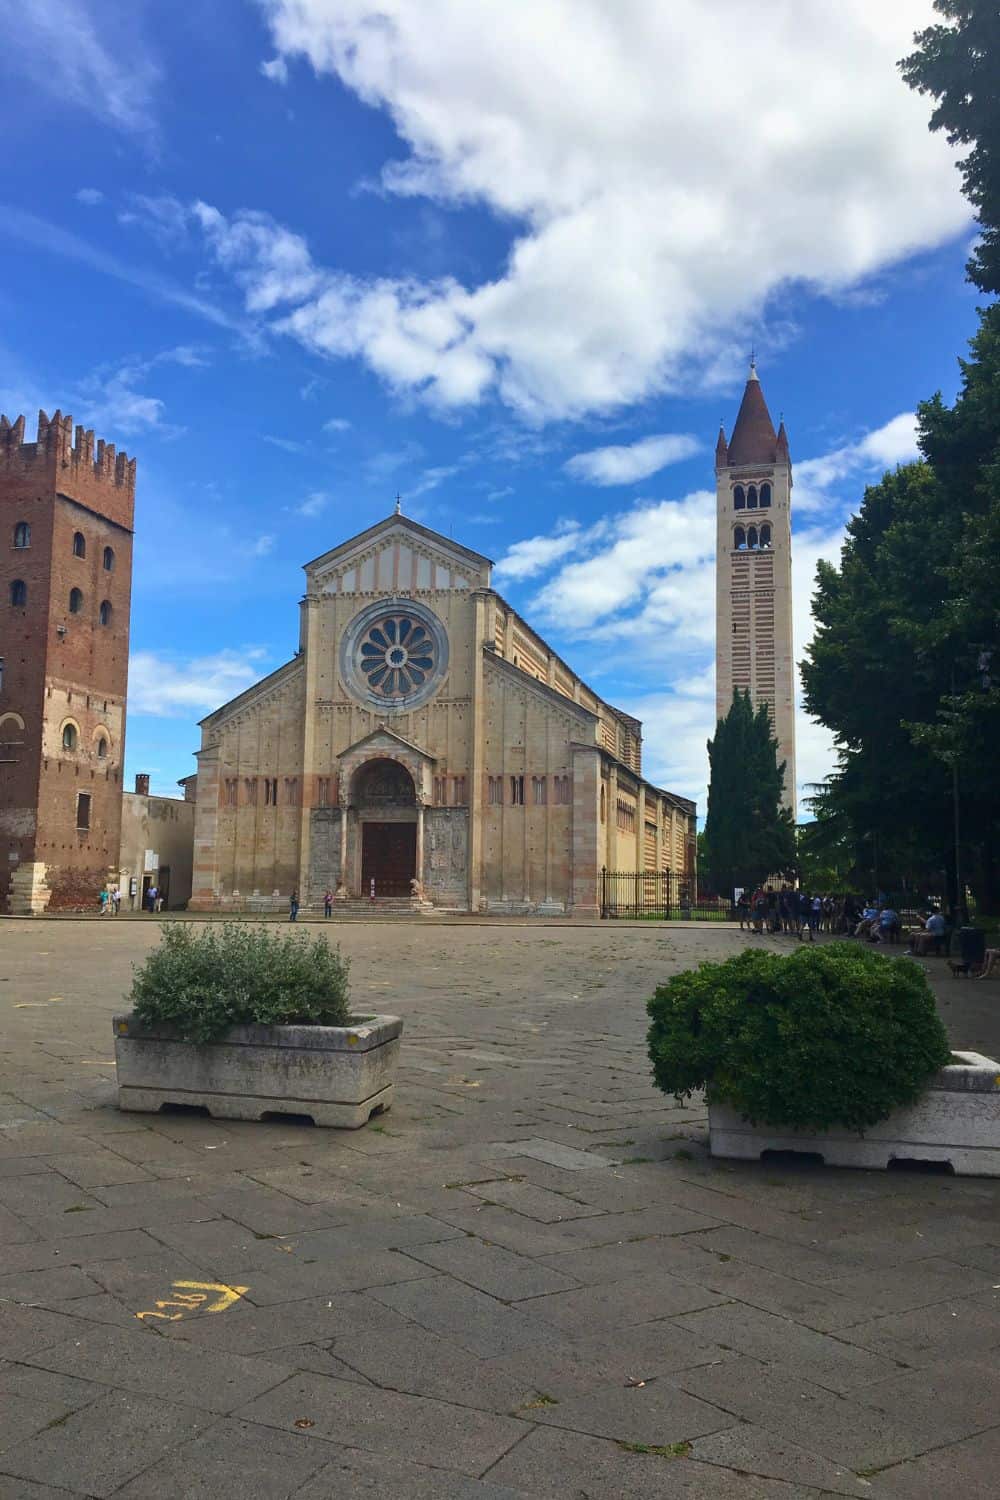 A picture fro a distance of the Basilica di San Zeno Maggiore